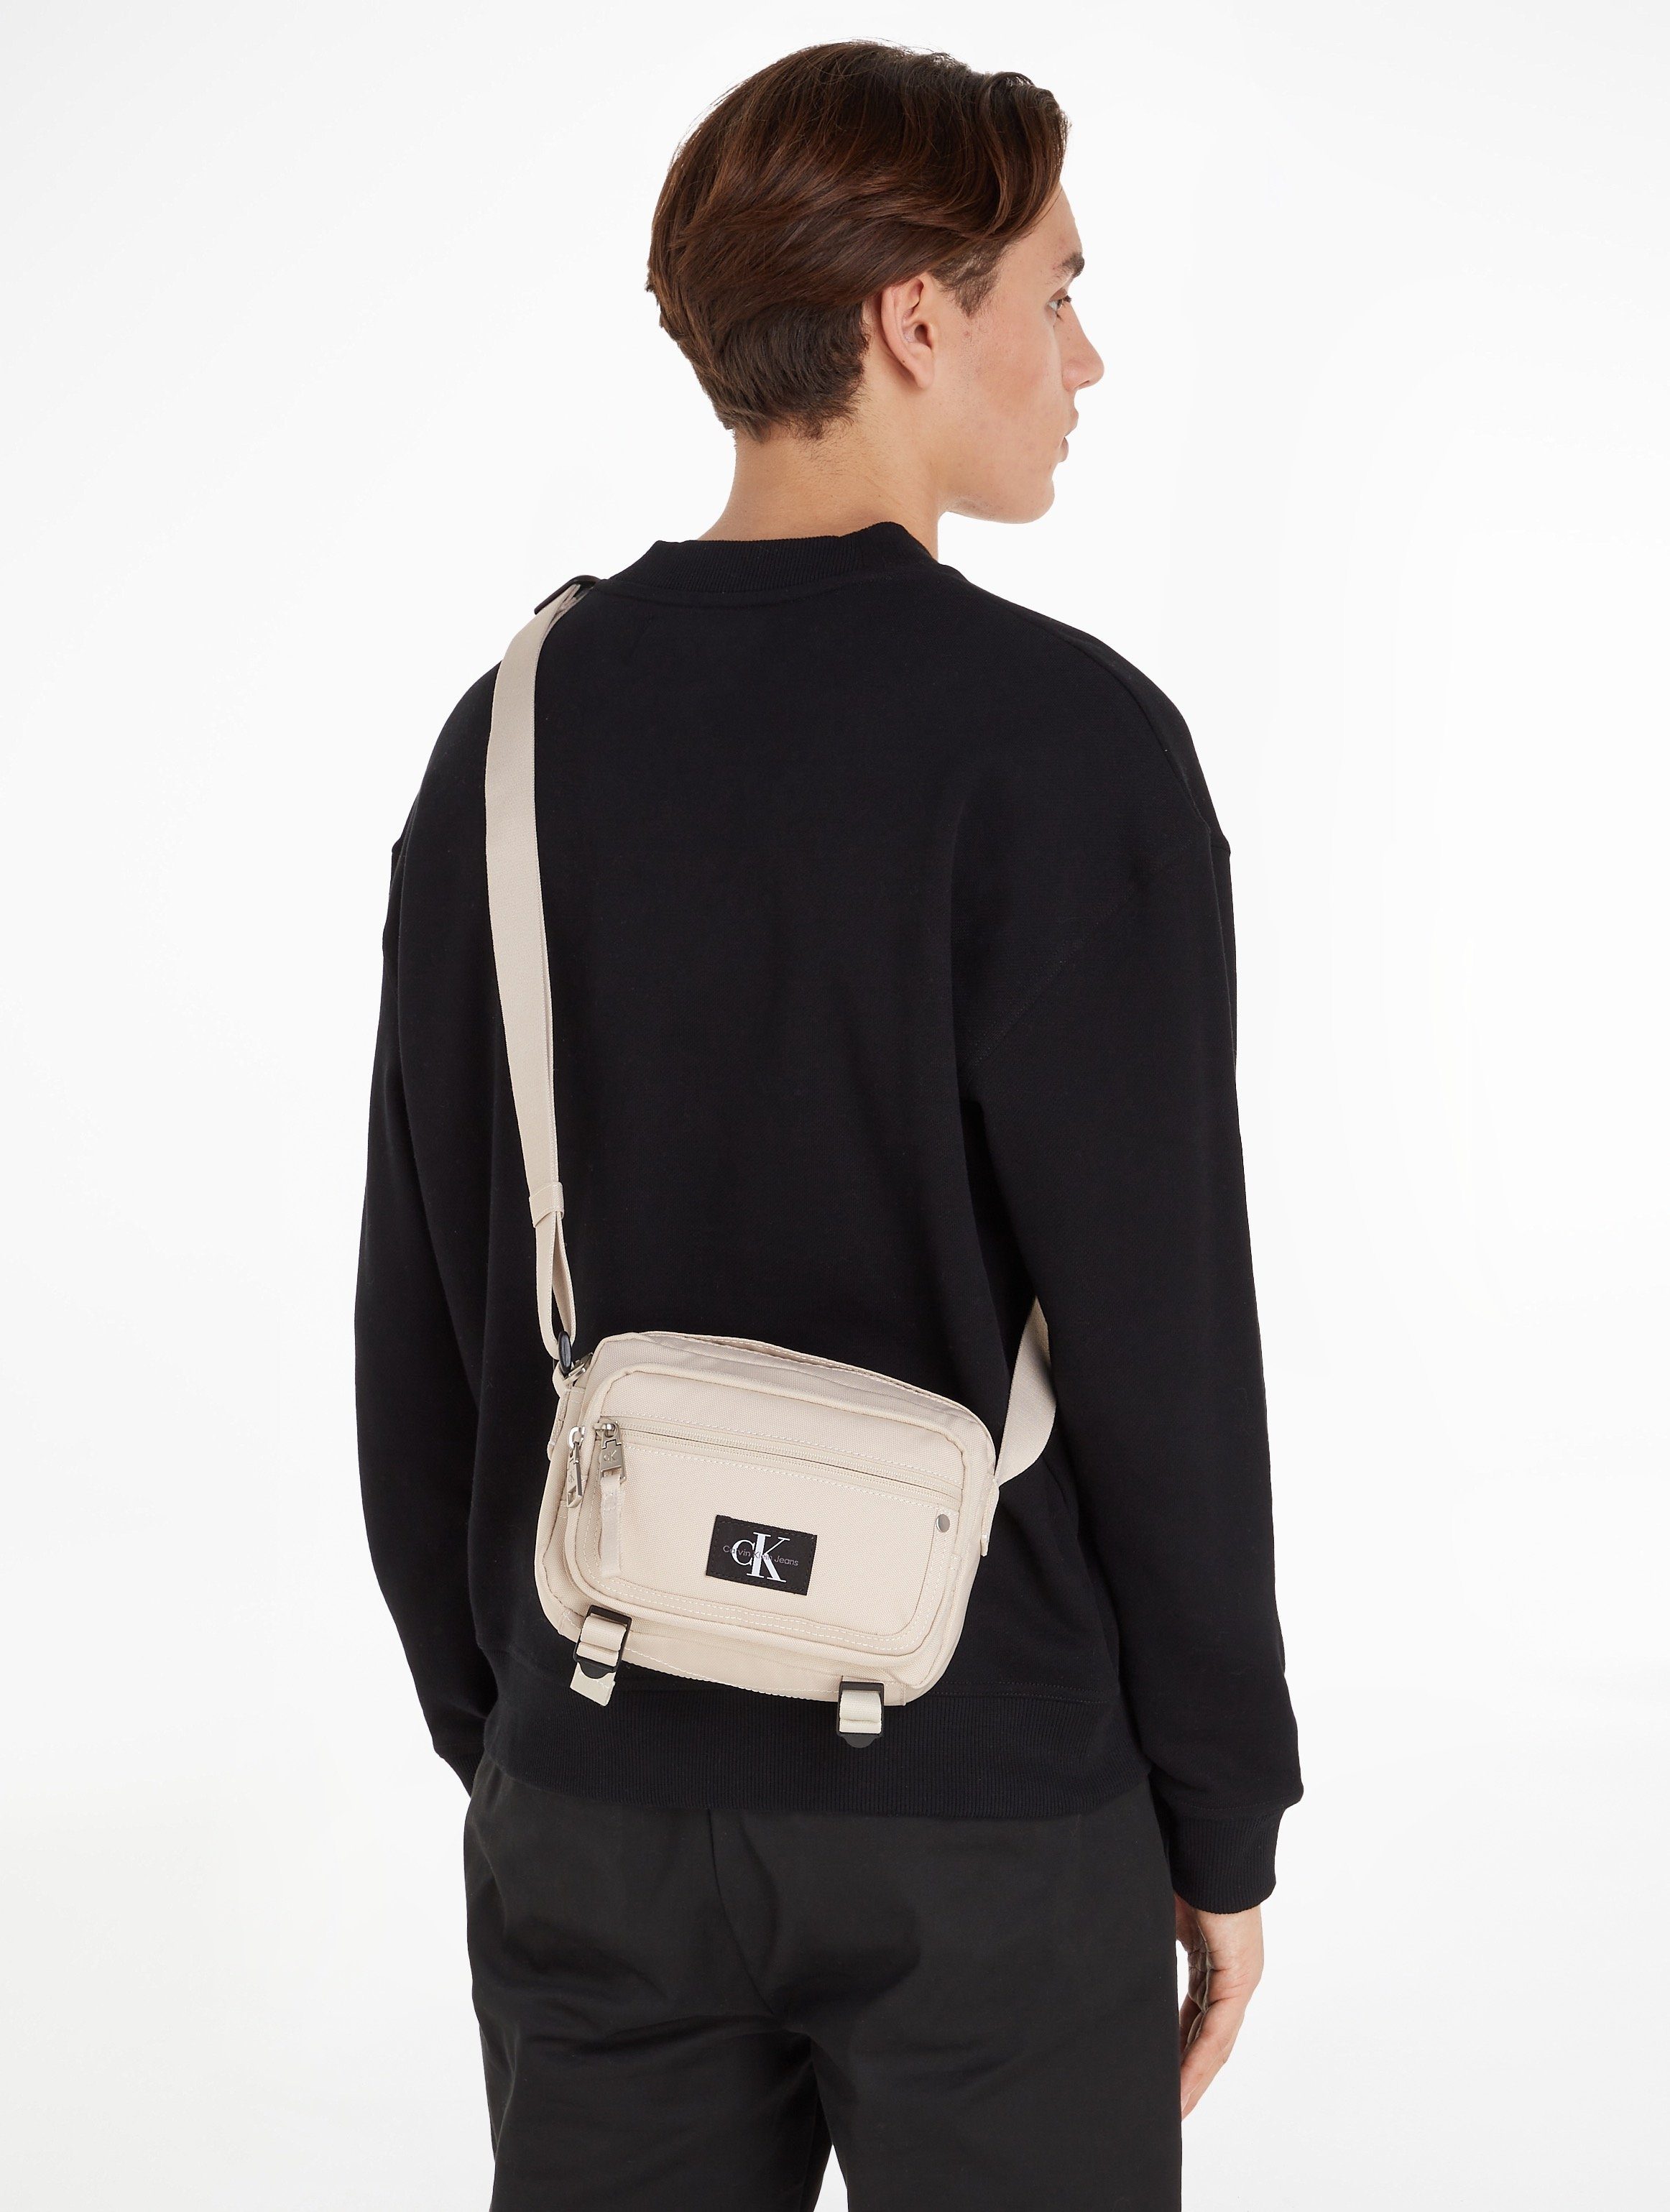 SPORT Calvin im BAG21 W, Jeans Bag ESSENTIALS Design beige praktischen CAMERA Mini Klein